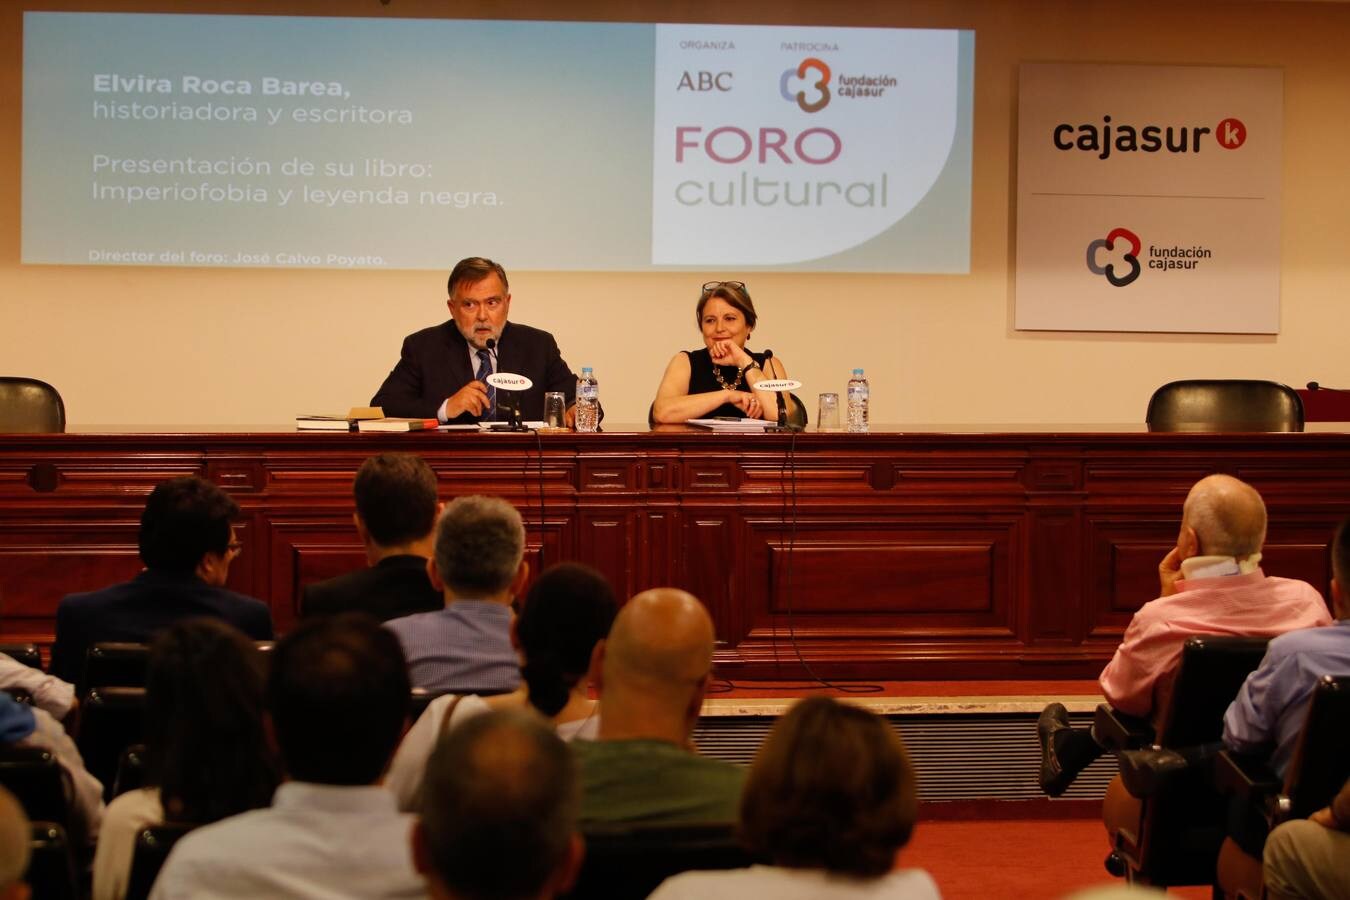 El Foro Cultural de ABC Córdoba con Elvira Roca, en imágenes